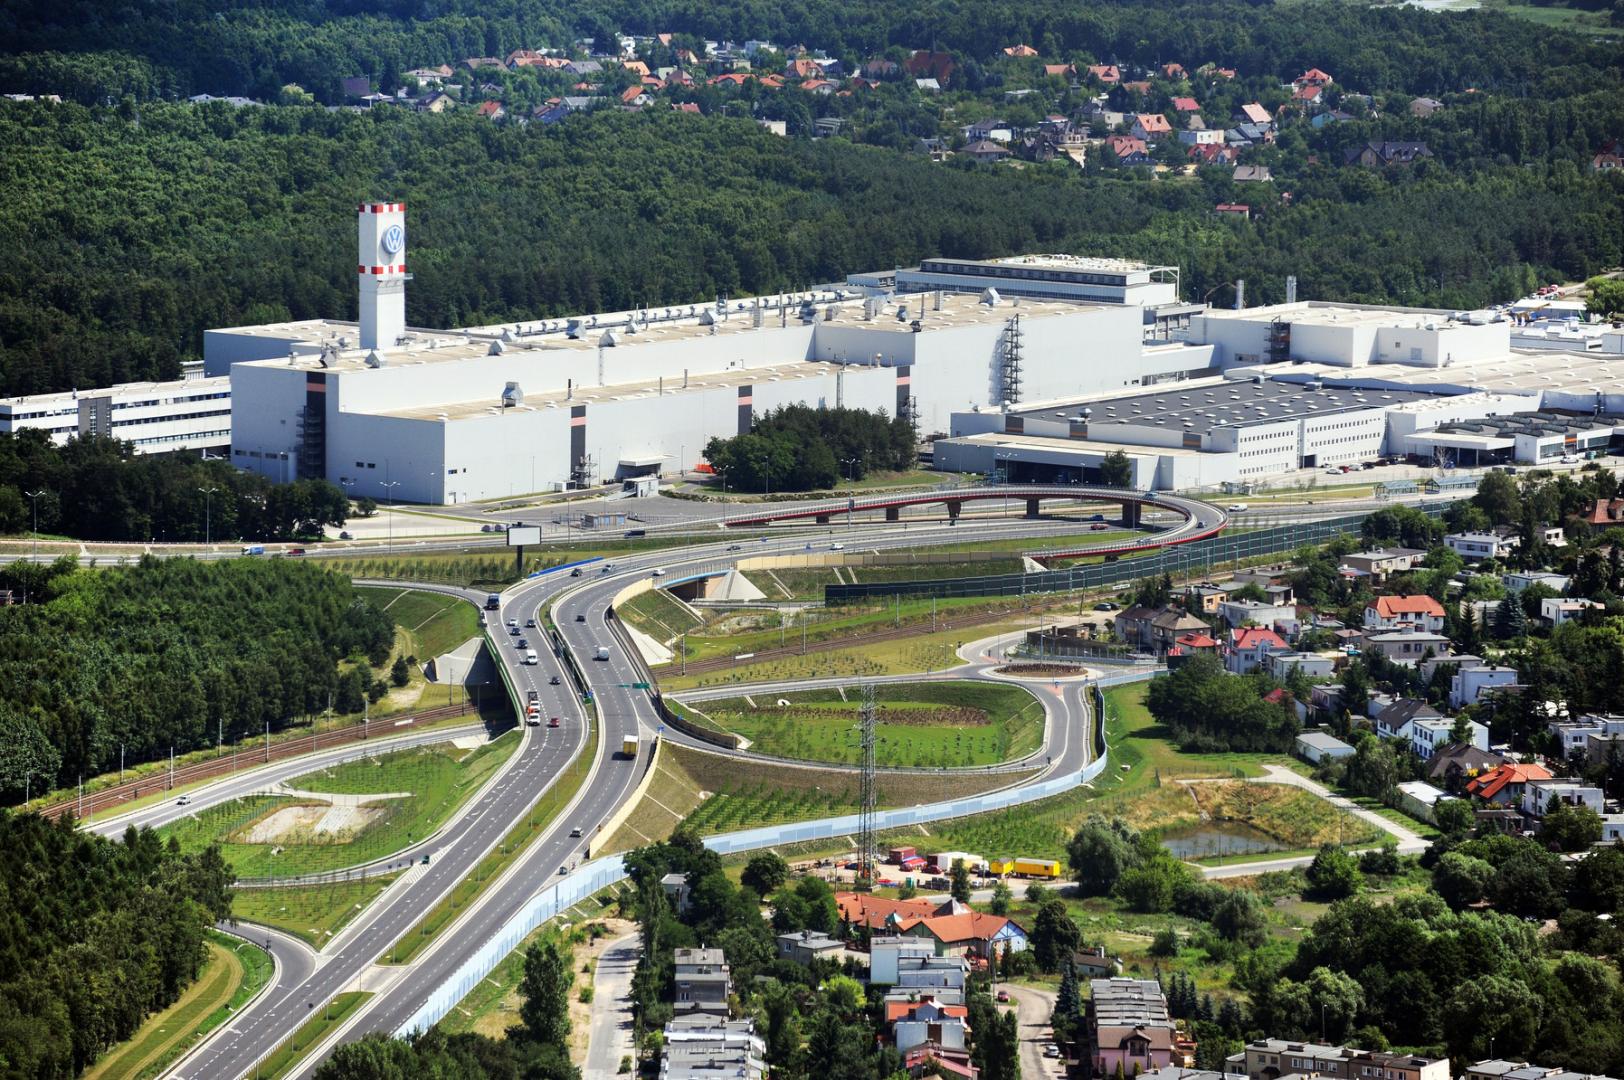 Volkswagen Poznań likwiduje 750 miejsc pracy, spółka